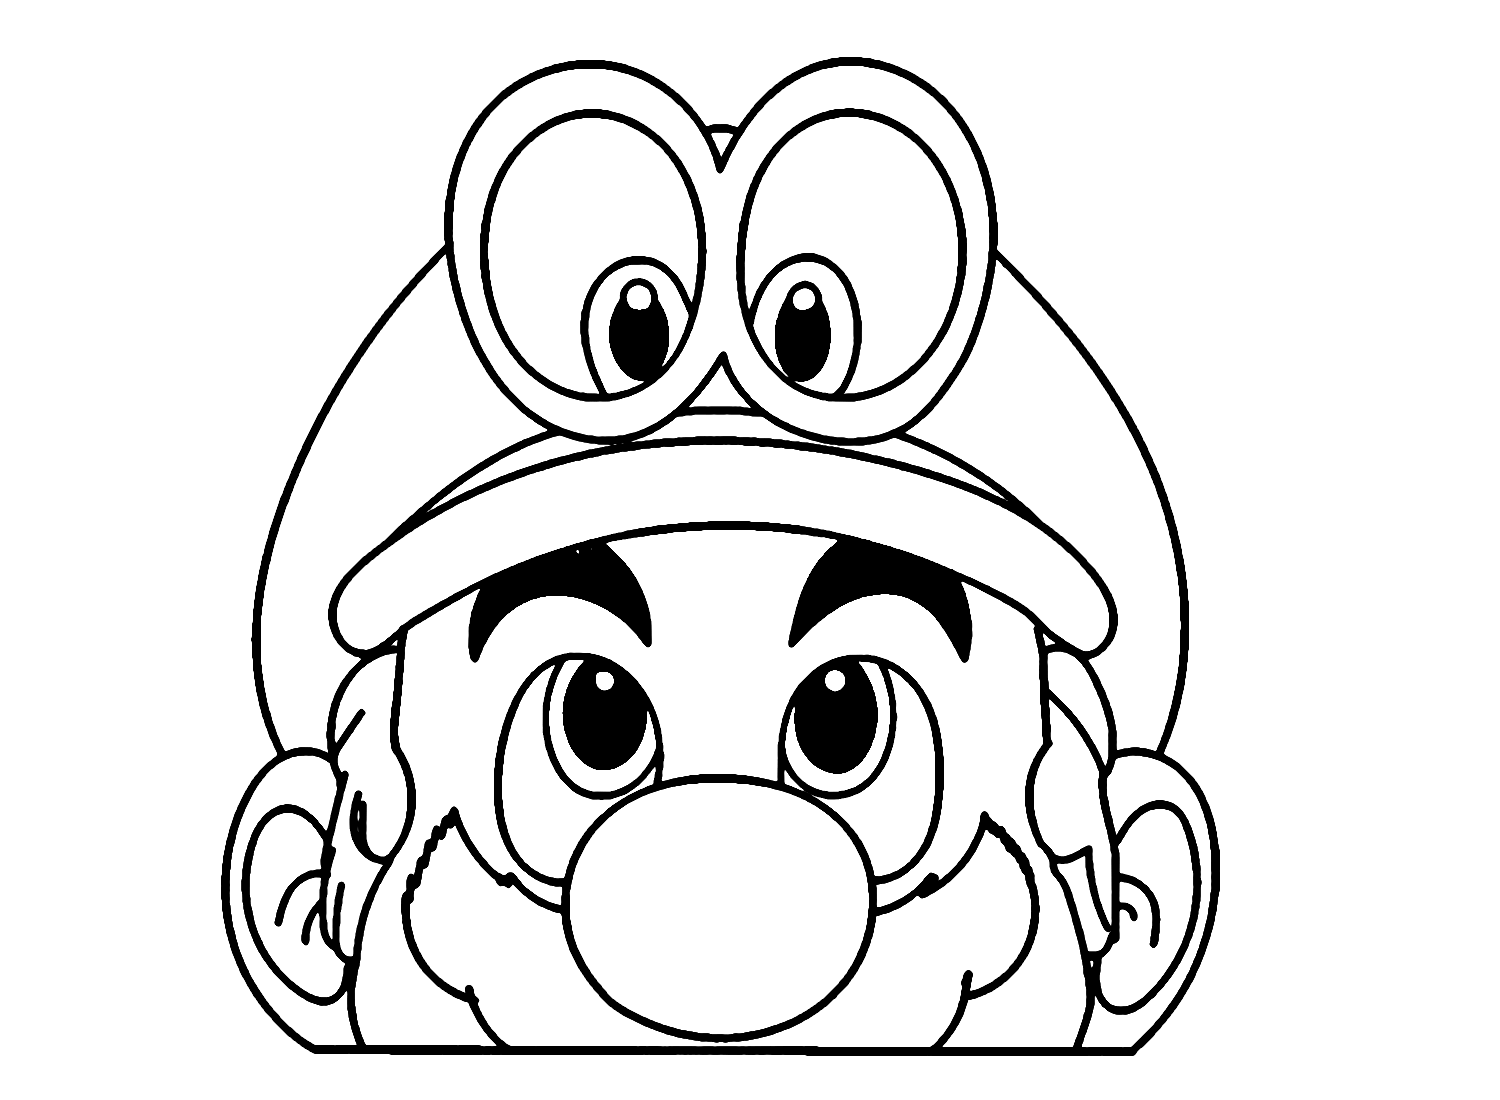 Mario in Super Mario Odyssey Coloring Page